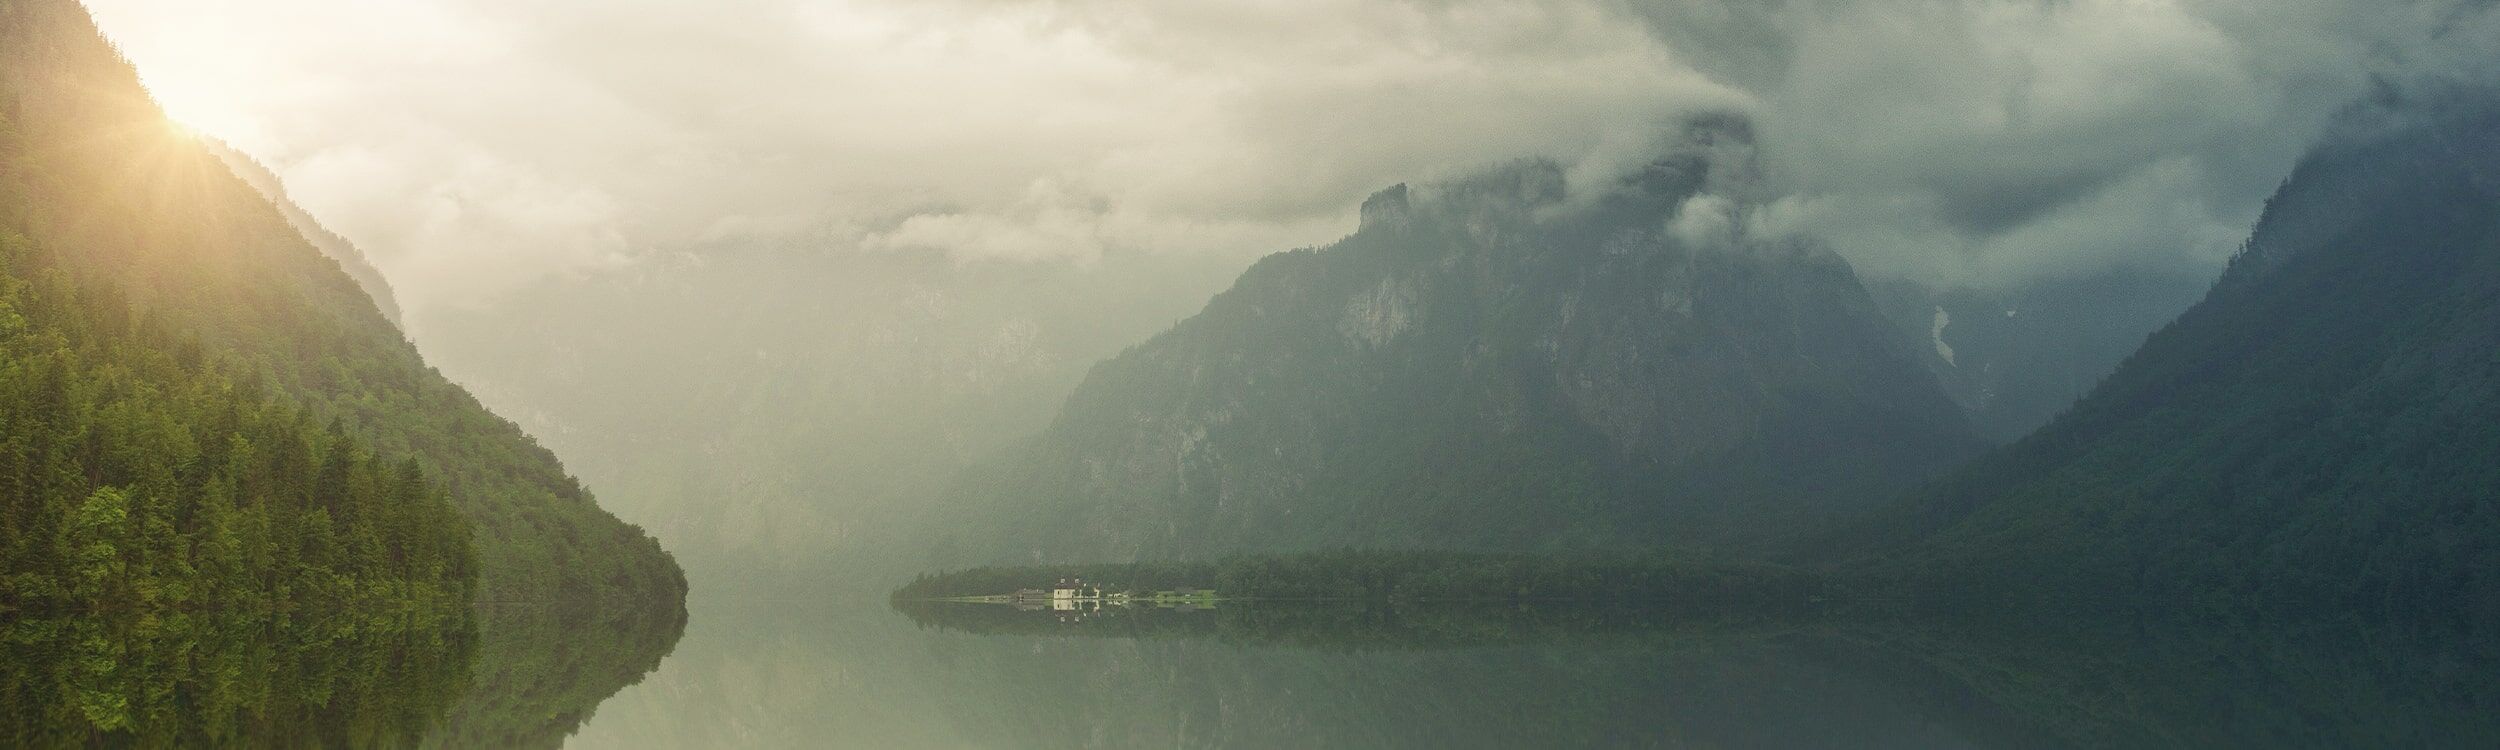 Header Philosophie | Ruhige Landschaft mit einem See & Bergen